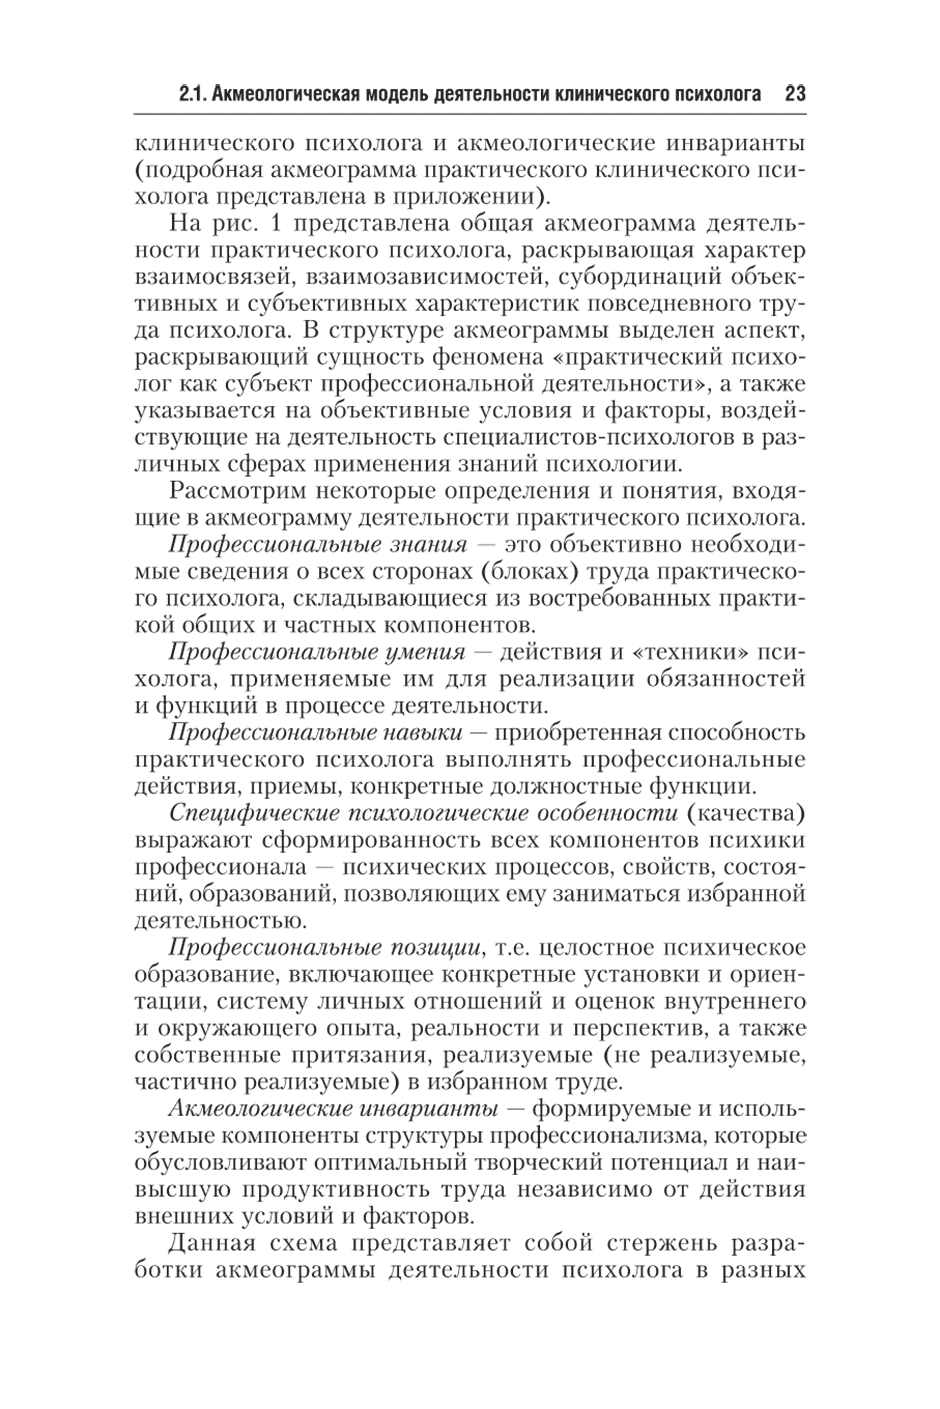 Пример страницы из книги "Клиническая психология" - Ефремова Г. И.